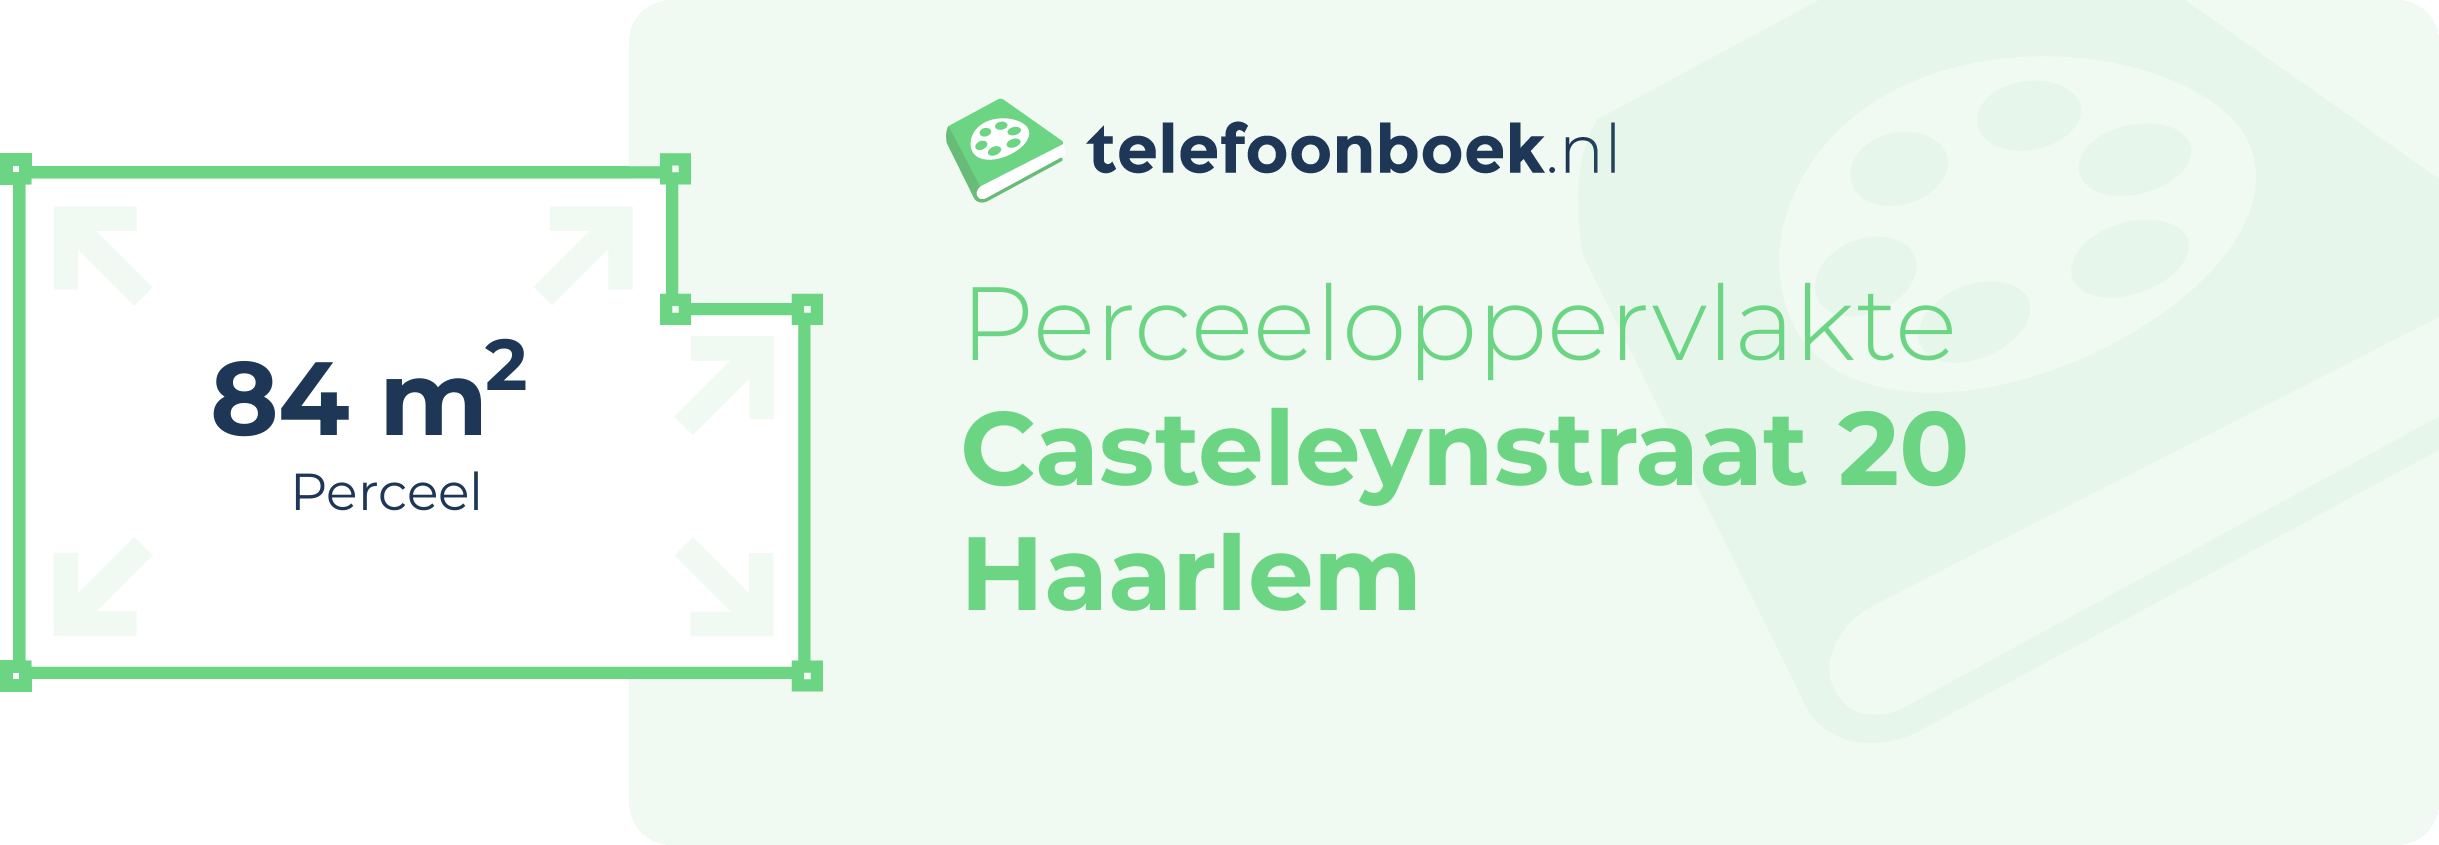 Perceeloppervlakte Casteleynstraat 20 Haarlem